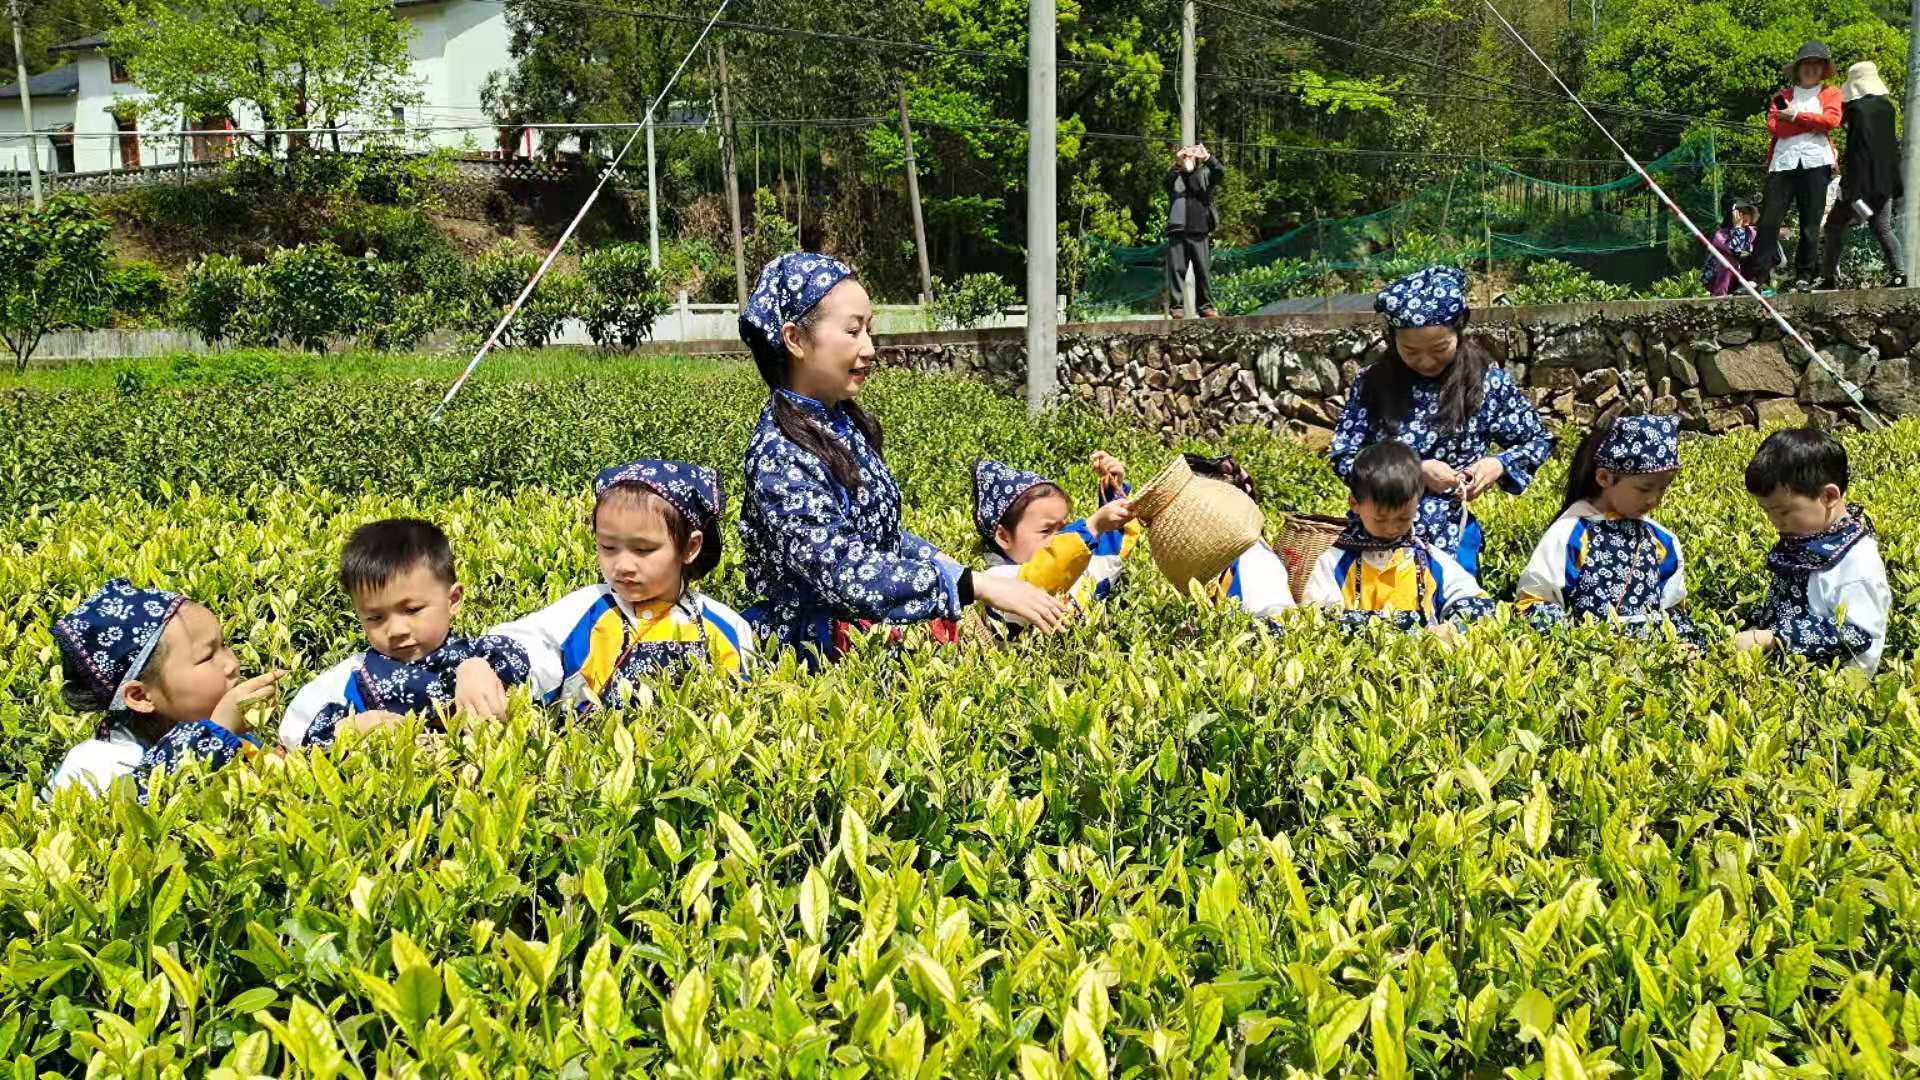 自驾和采茶给合 城里与乡村联姻 建德林茶村推出“助农采茶”